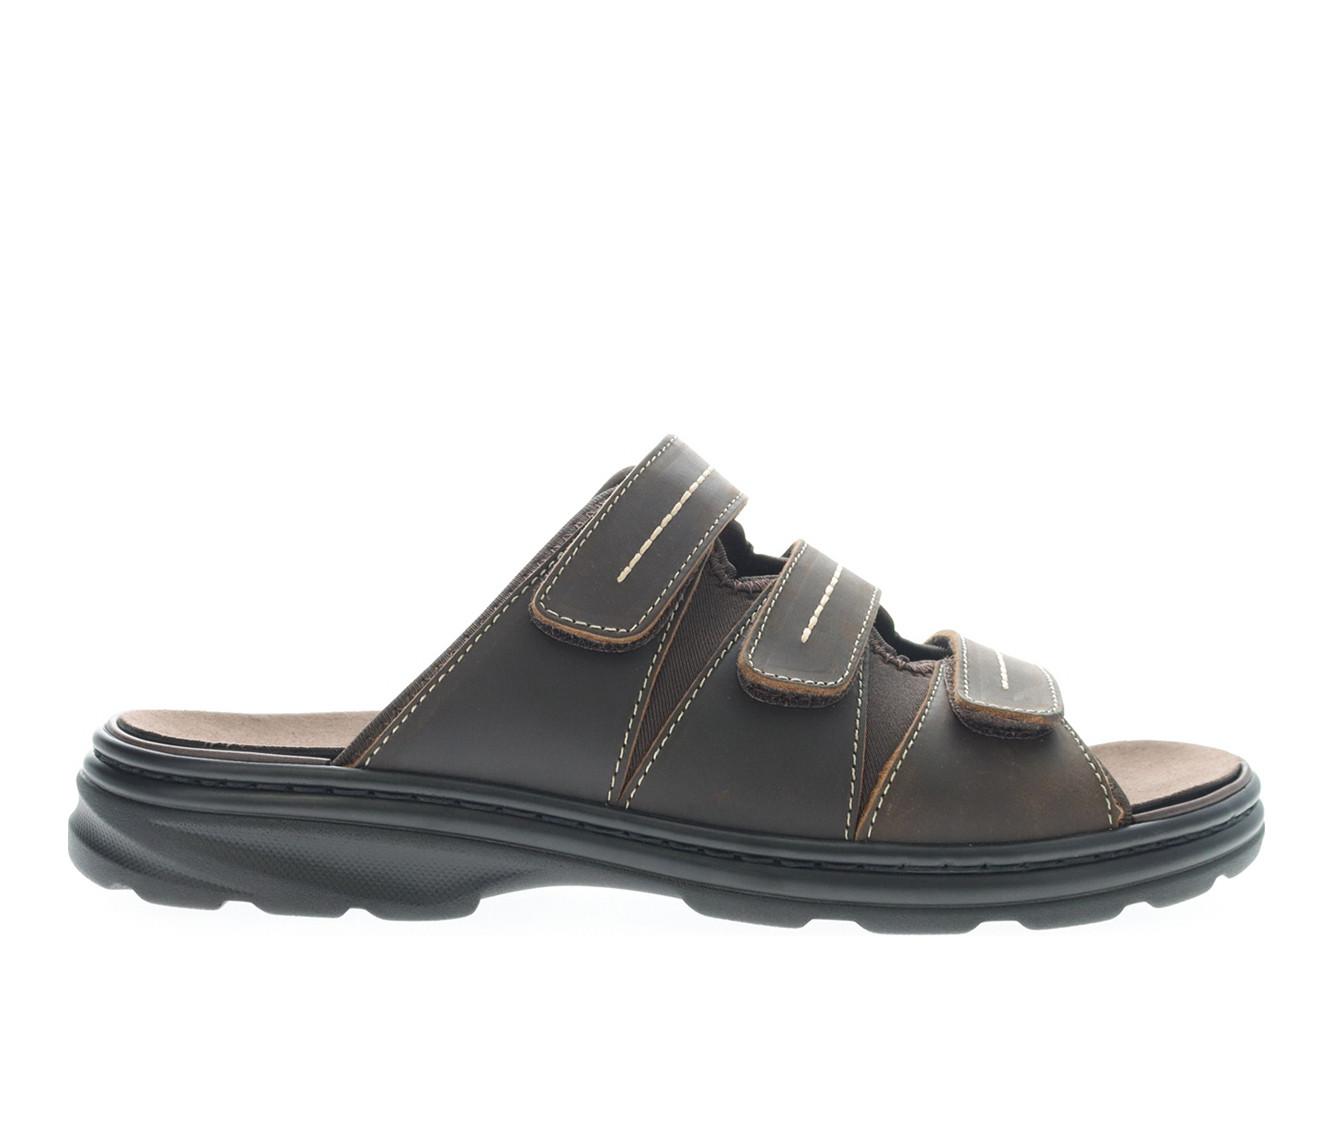 Men's Propet Hatcher Outdoor Sandals